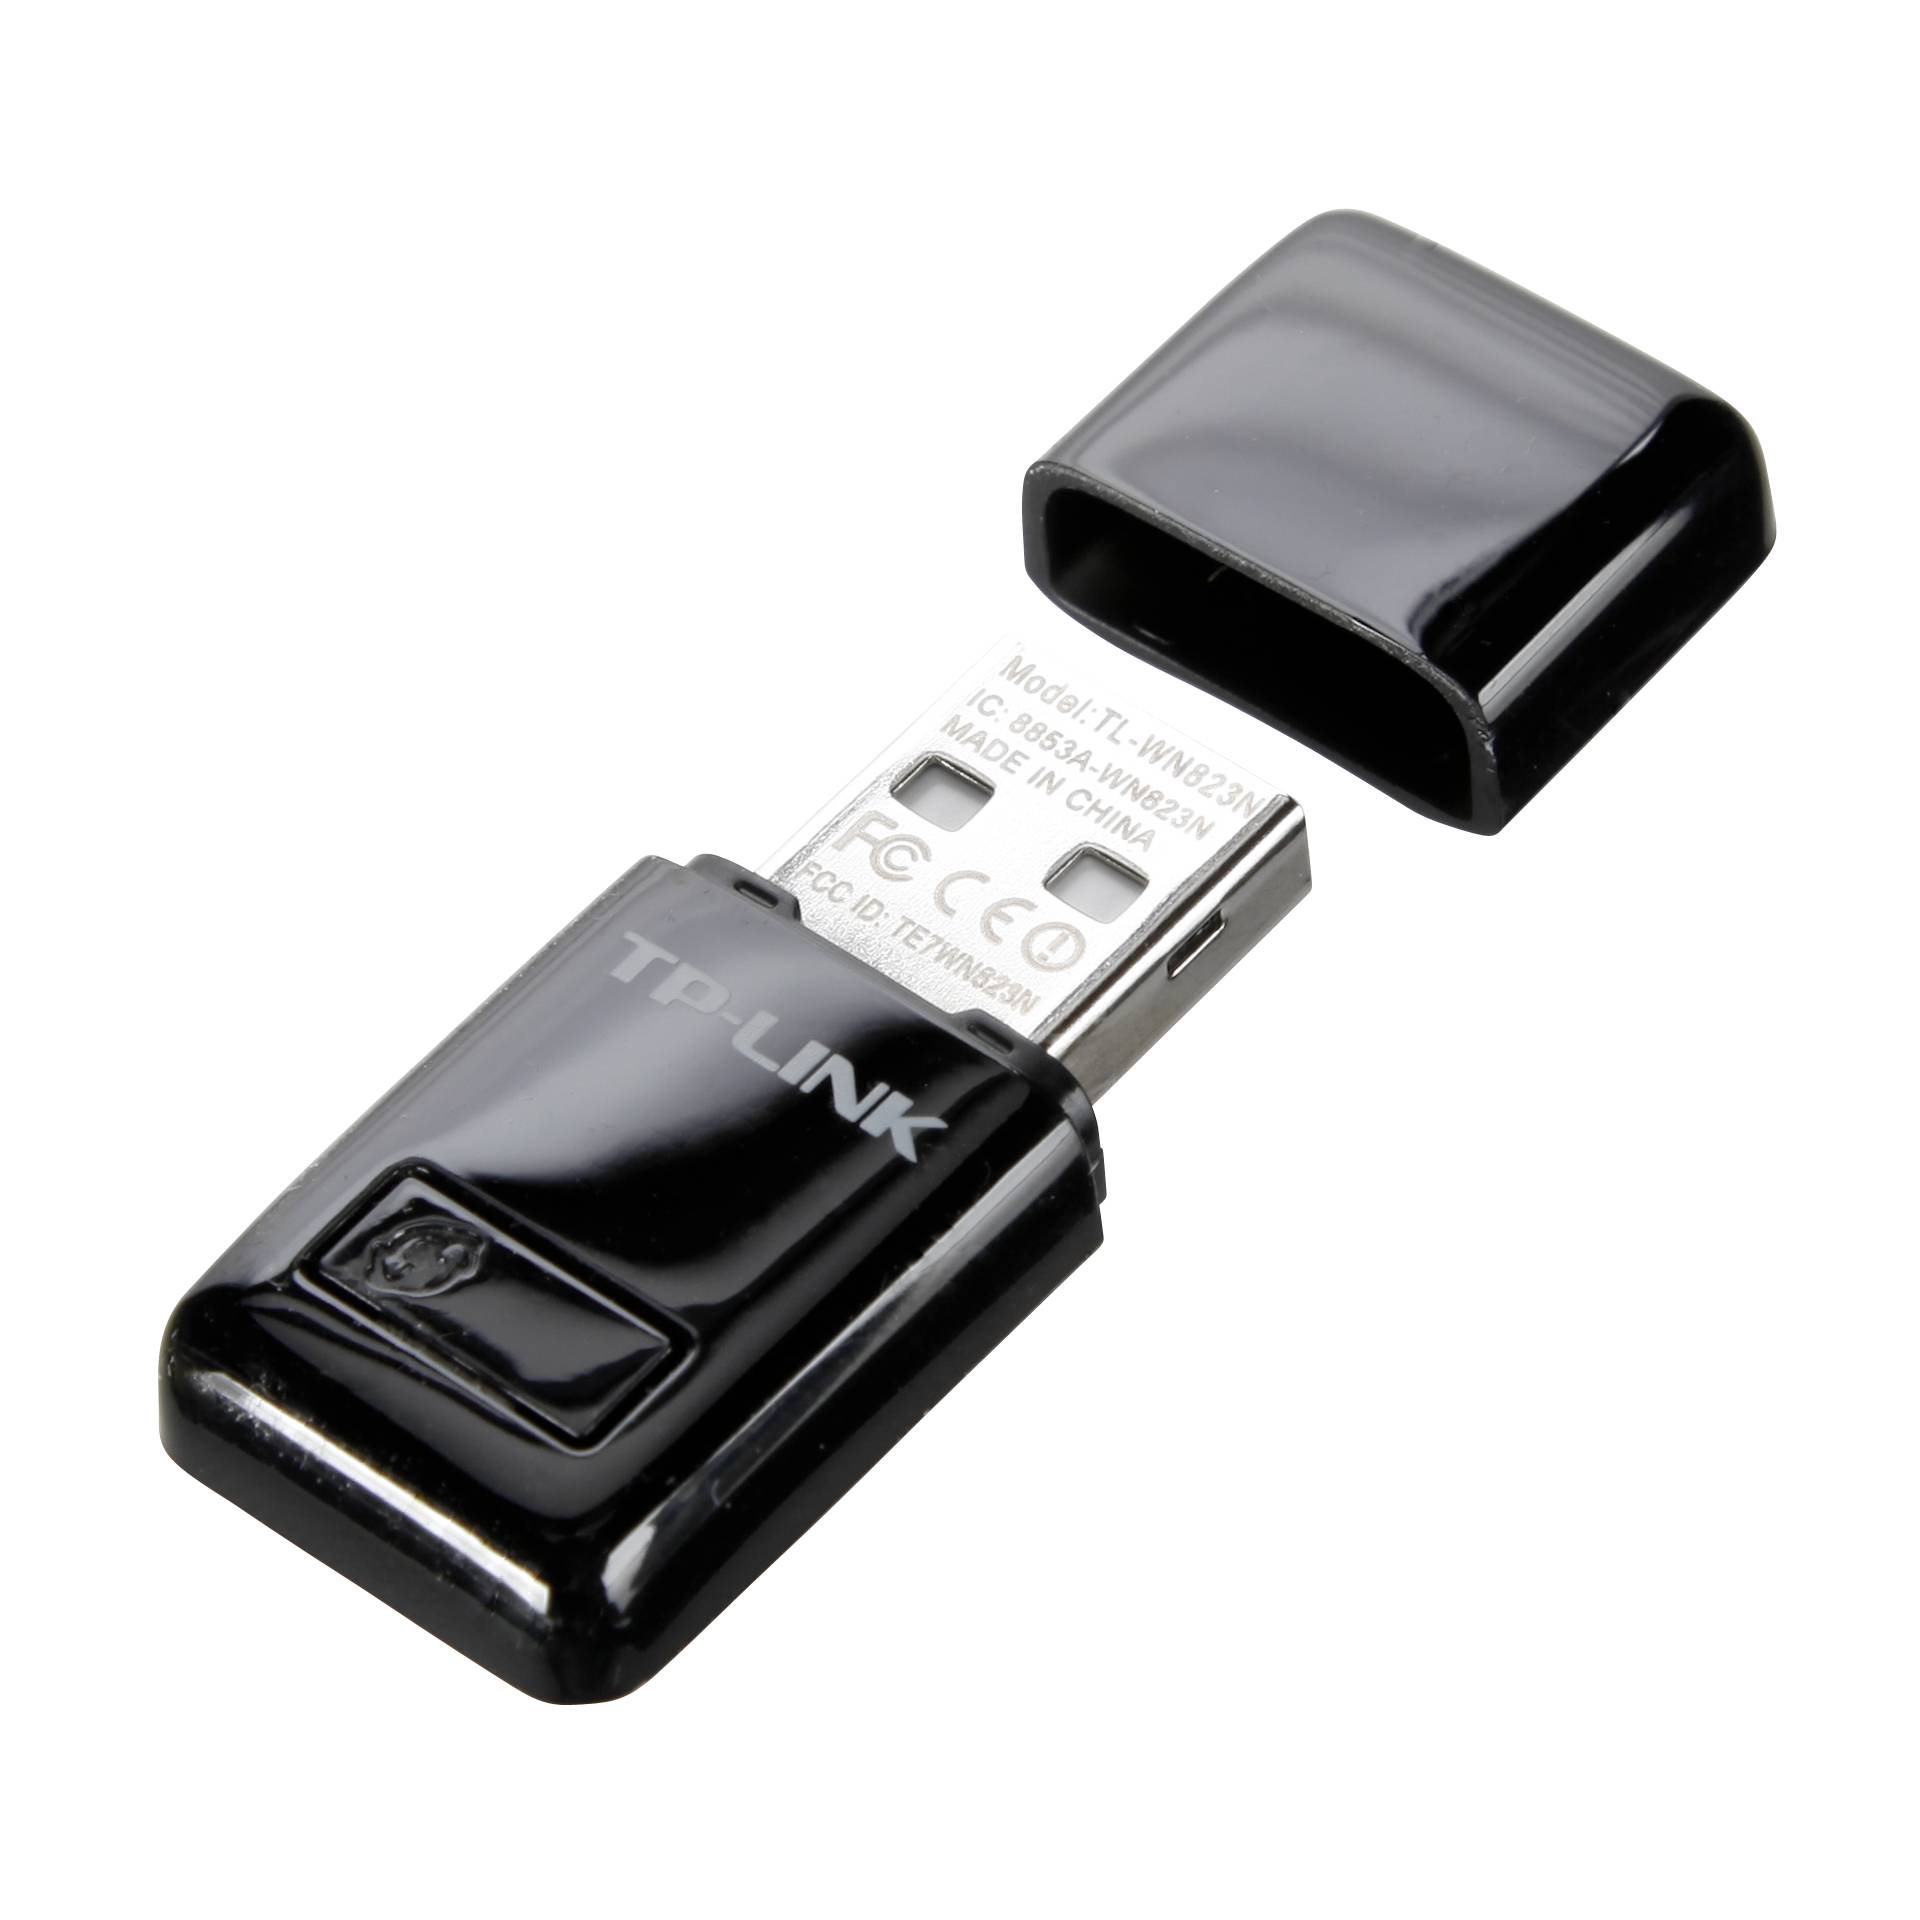 TP-LINK TL-WN823N 300Mbps-Mini-Wireless-N-USB-Adapter 